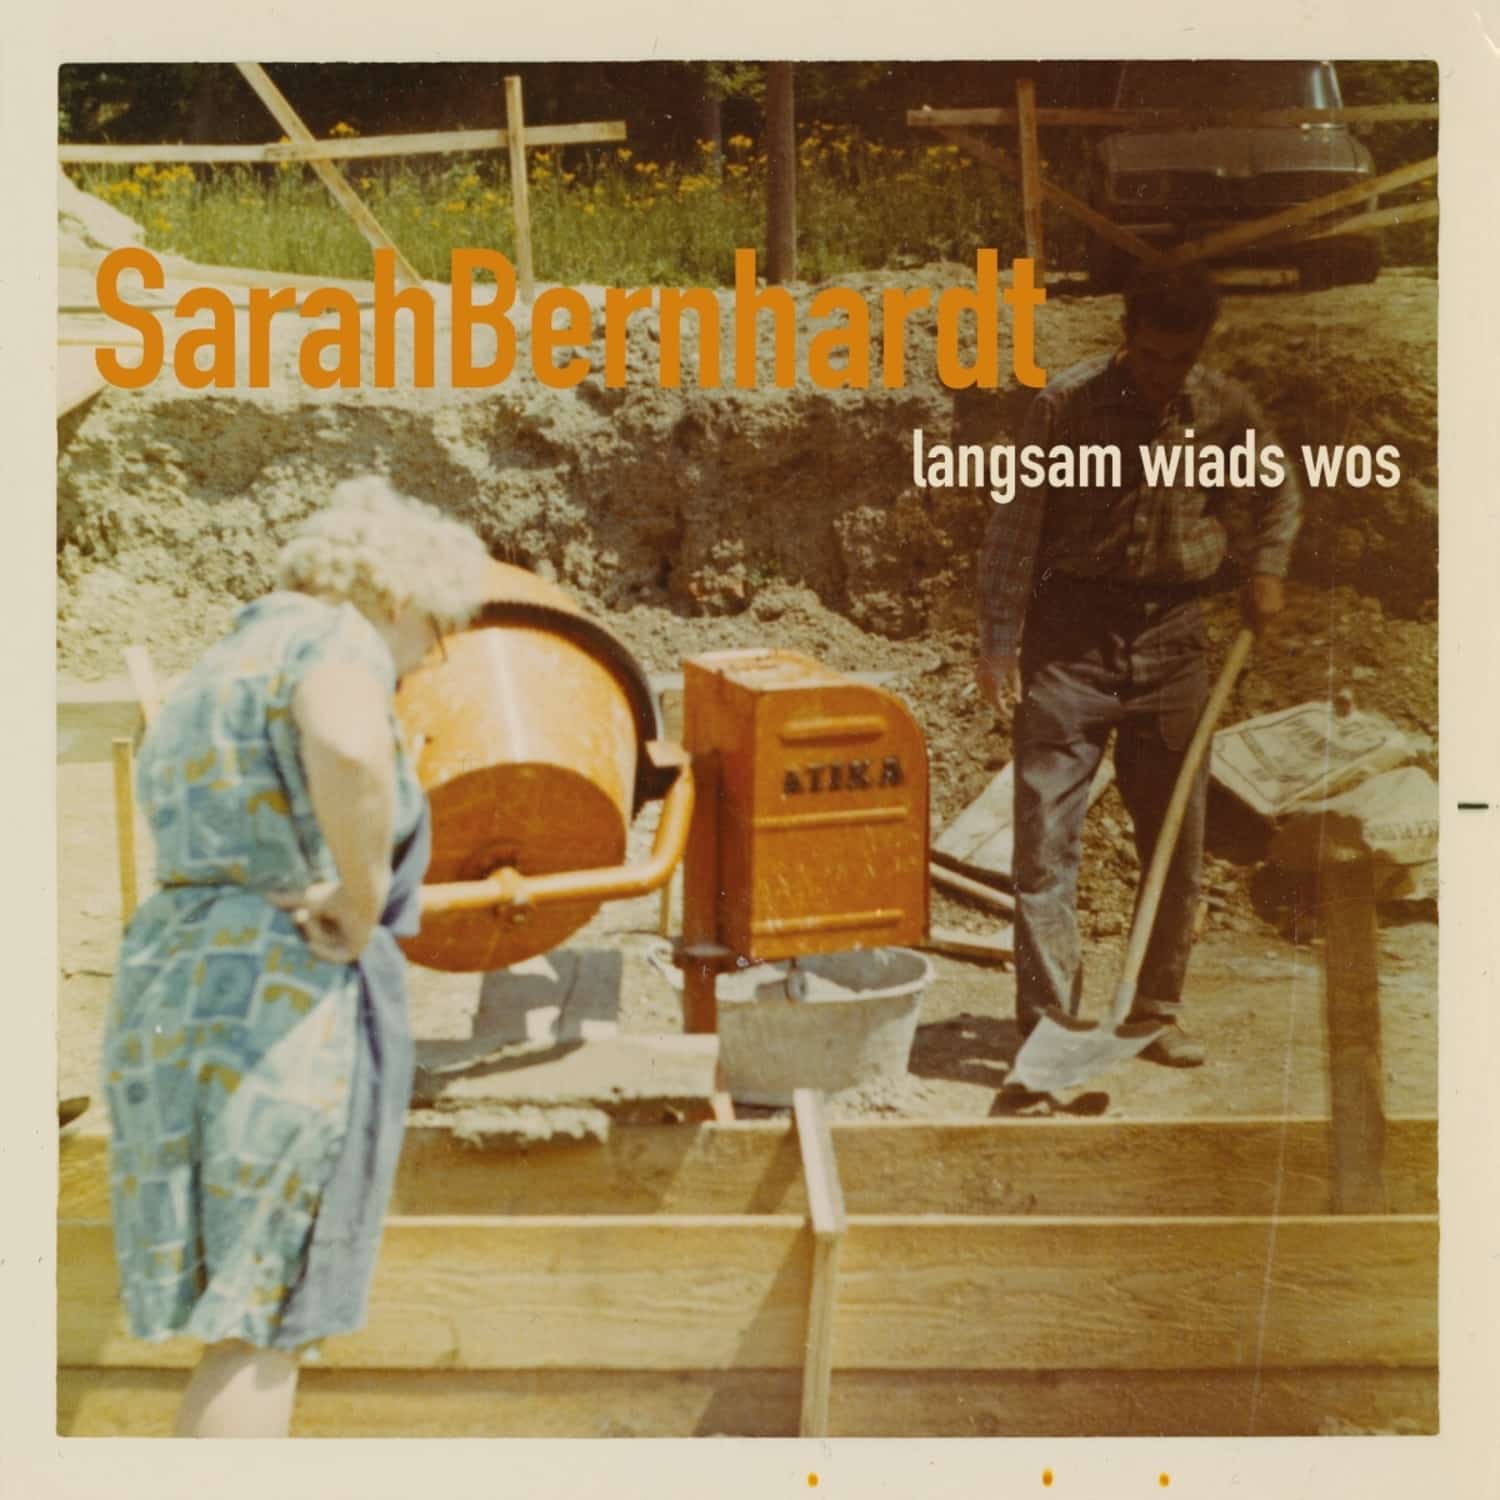 SarahBernhardt - LANGSAM WIADS WOS 